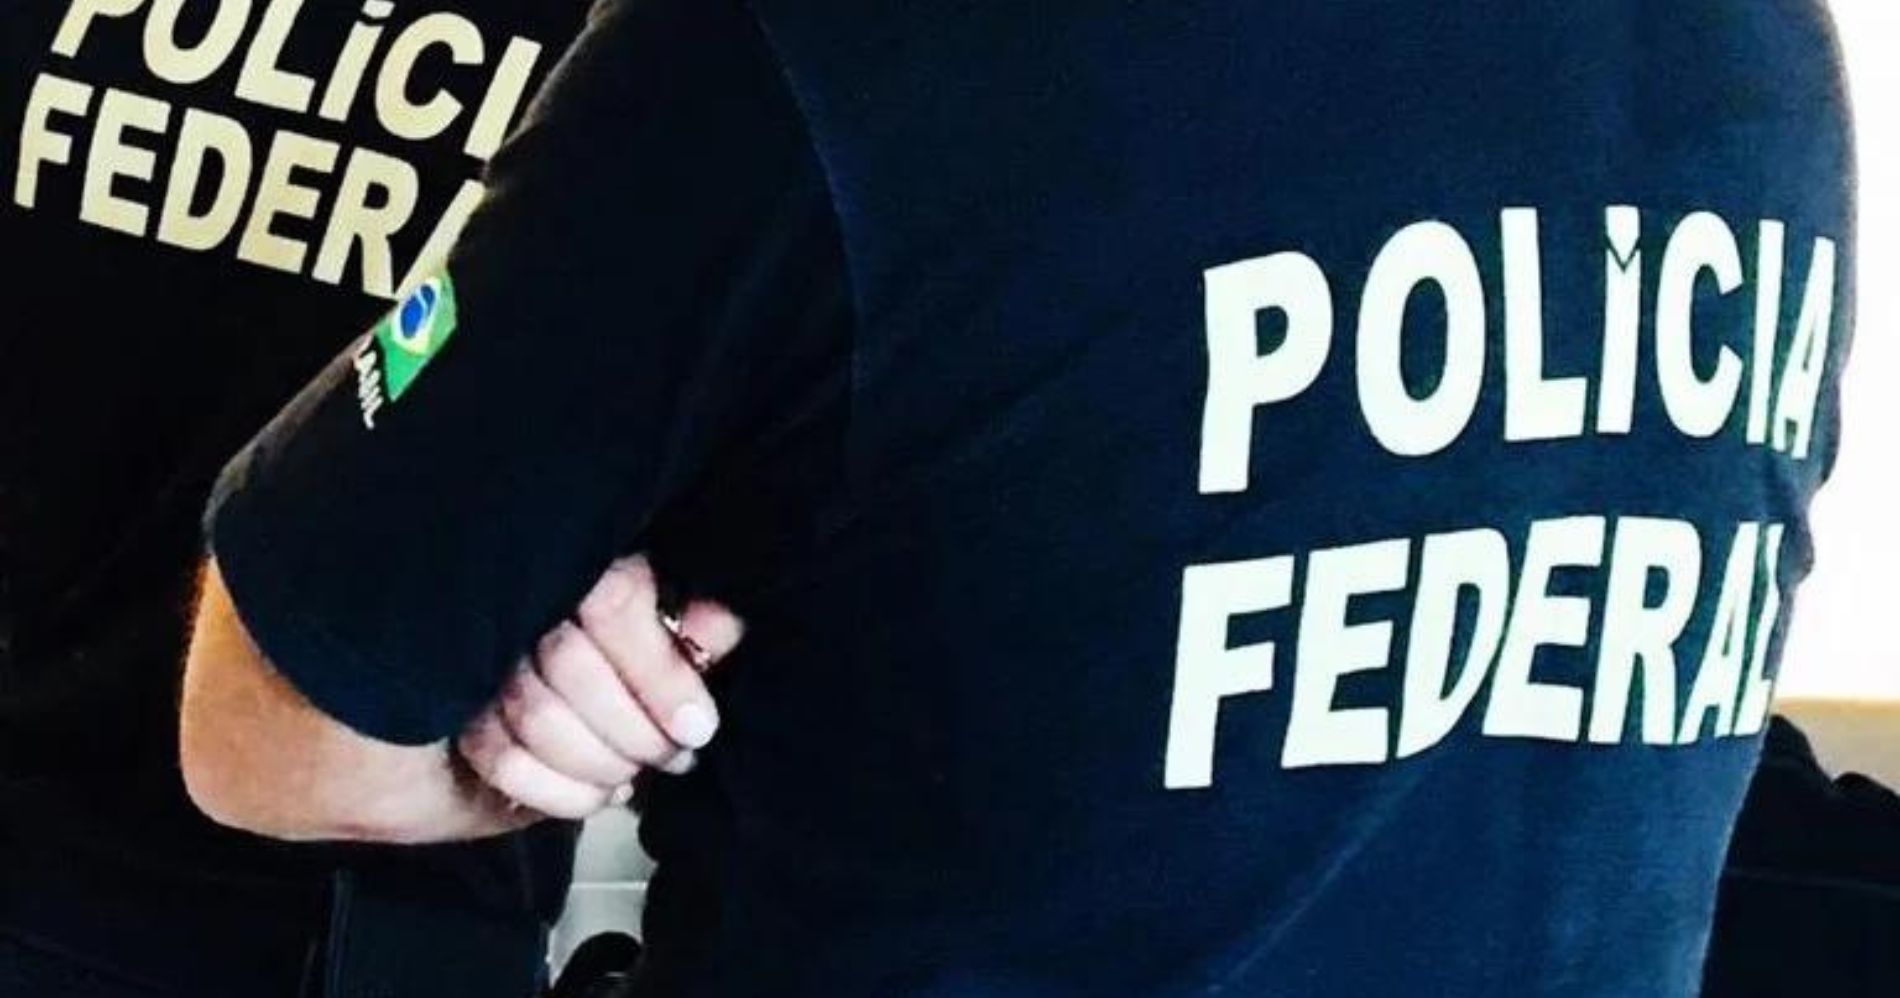 Polícia Federal realiza apreensão de 20 toneladas de drogas e prende 15 pessoas no Paraná